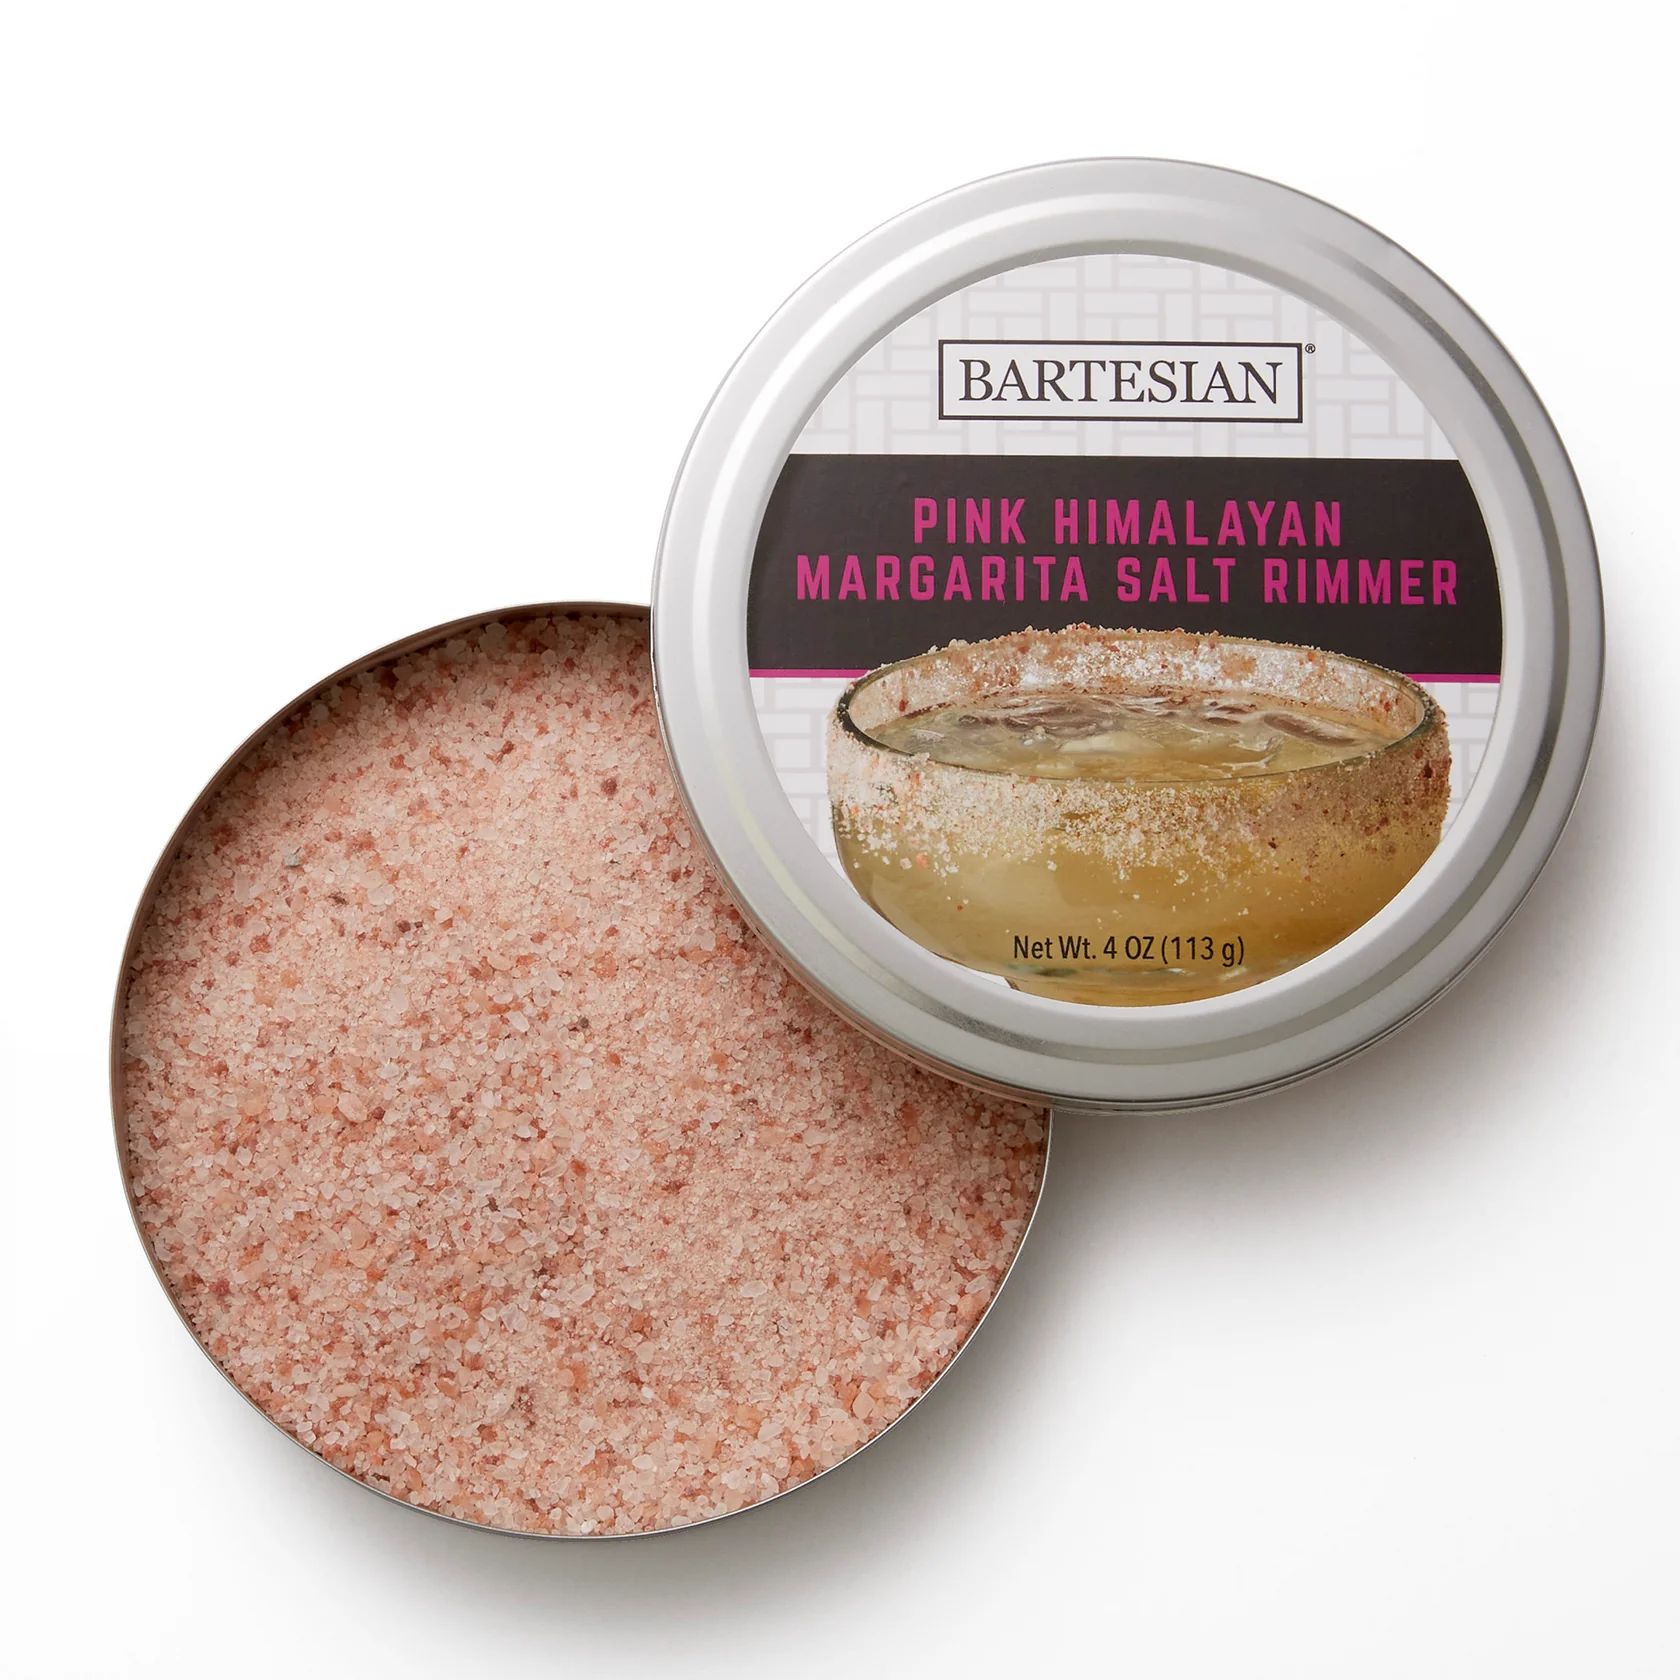 Pink Himalayan Margarita Salt Rimmer | Bartesian | Bartesian